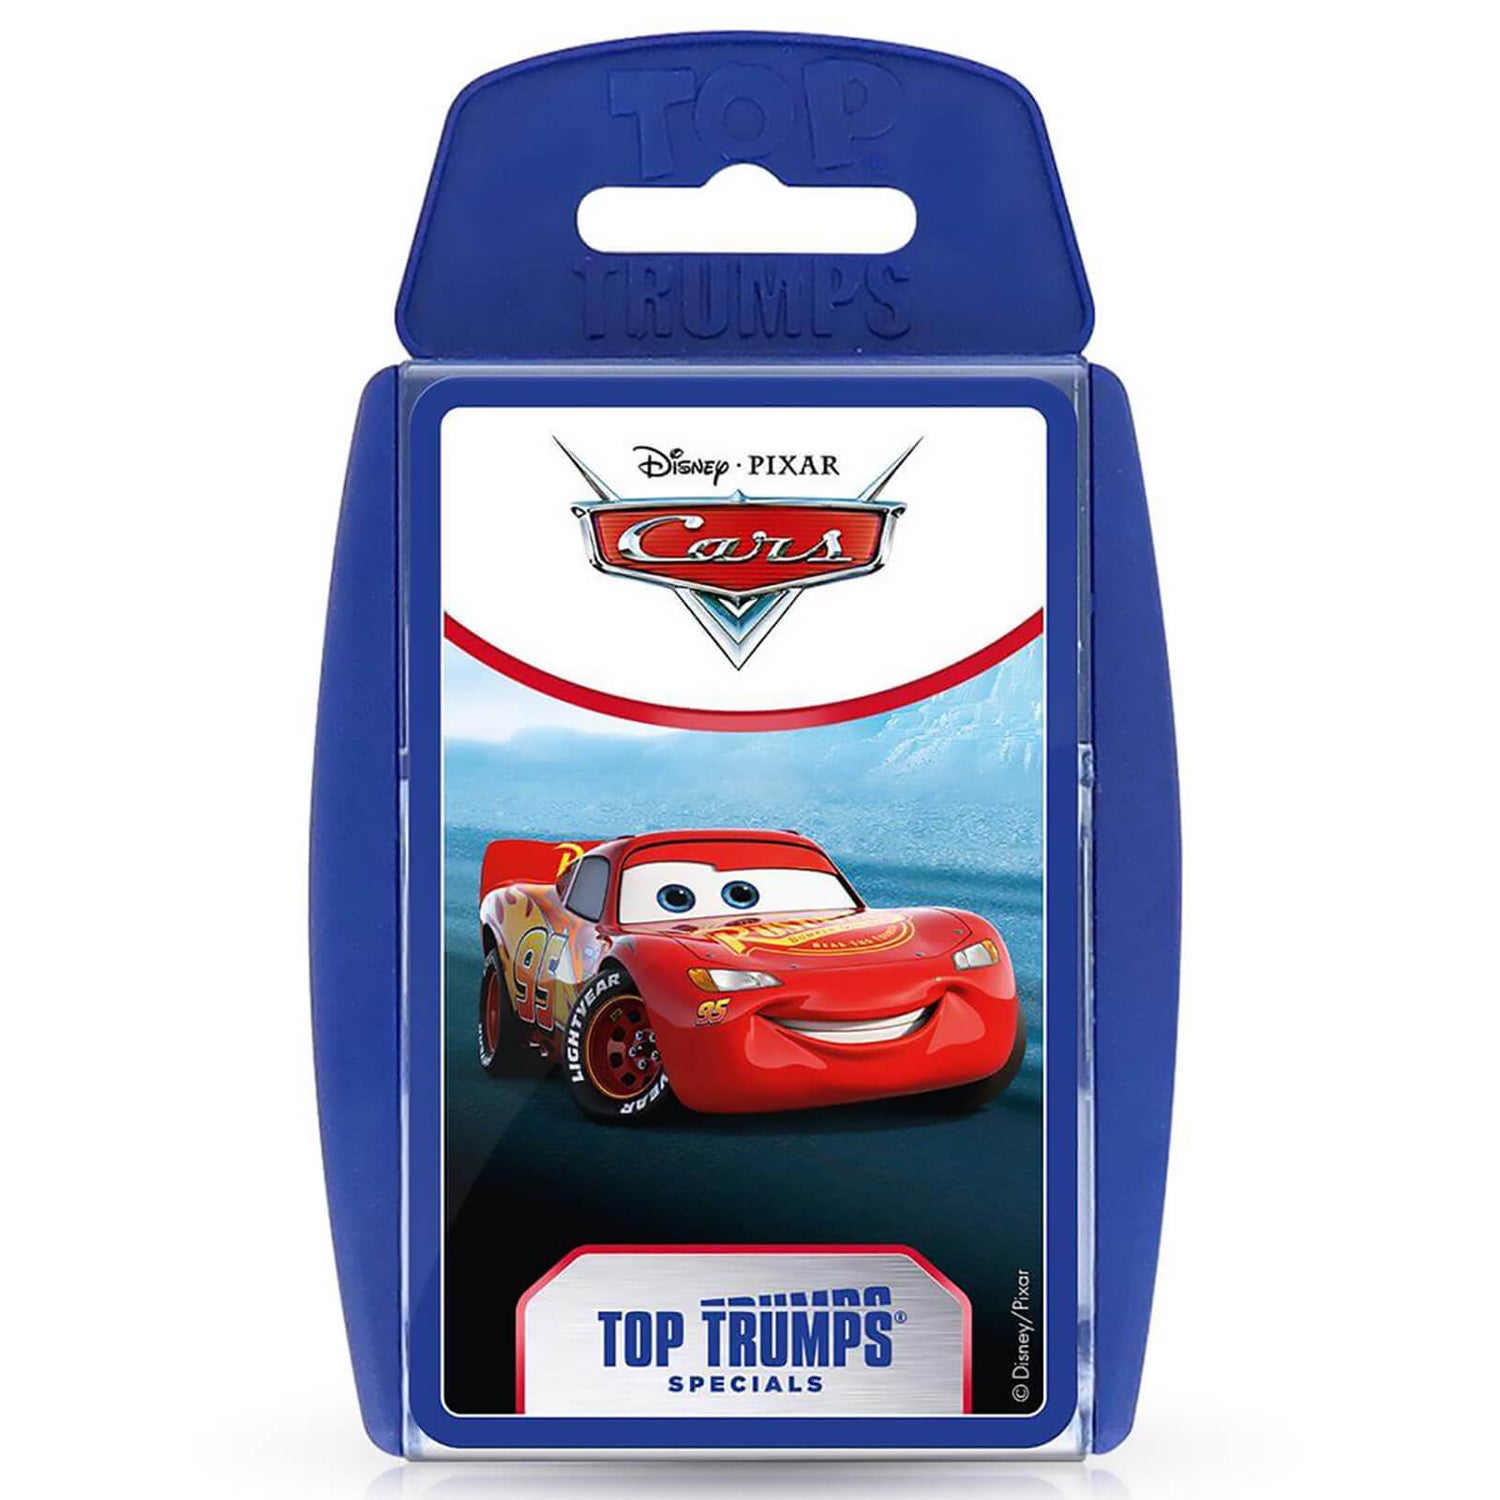 Top Trumps Specials - Disney Cars Edition